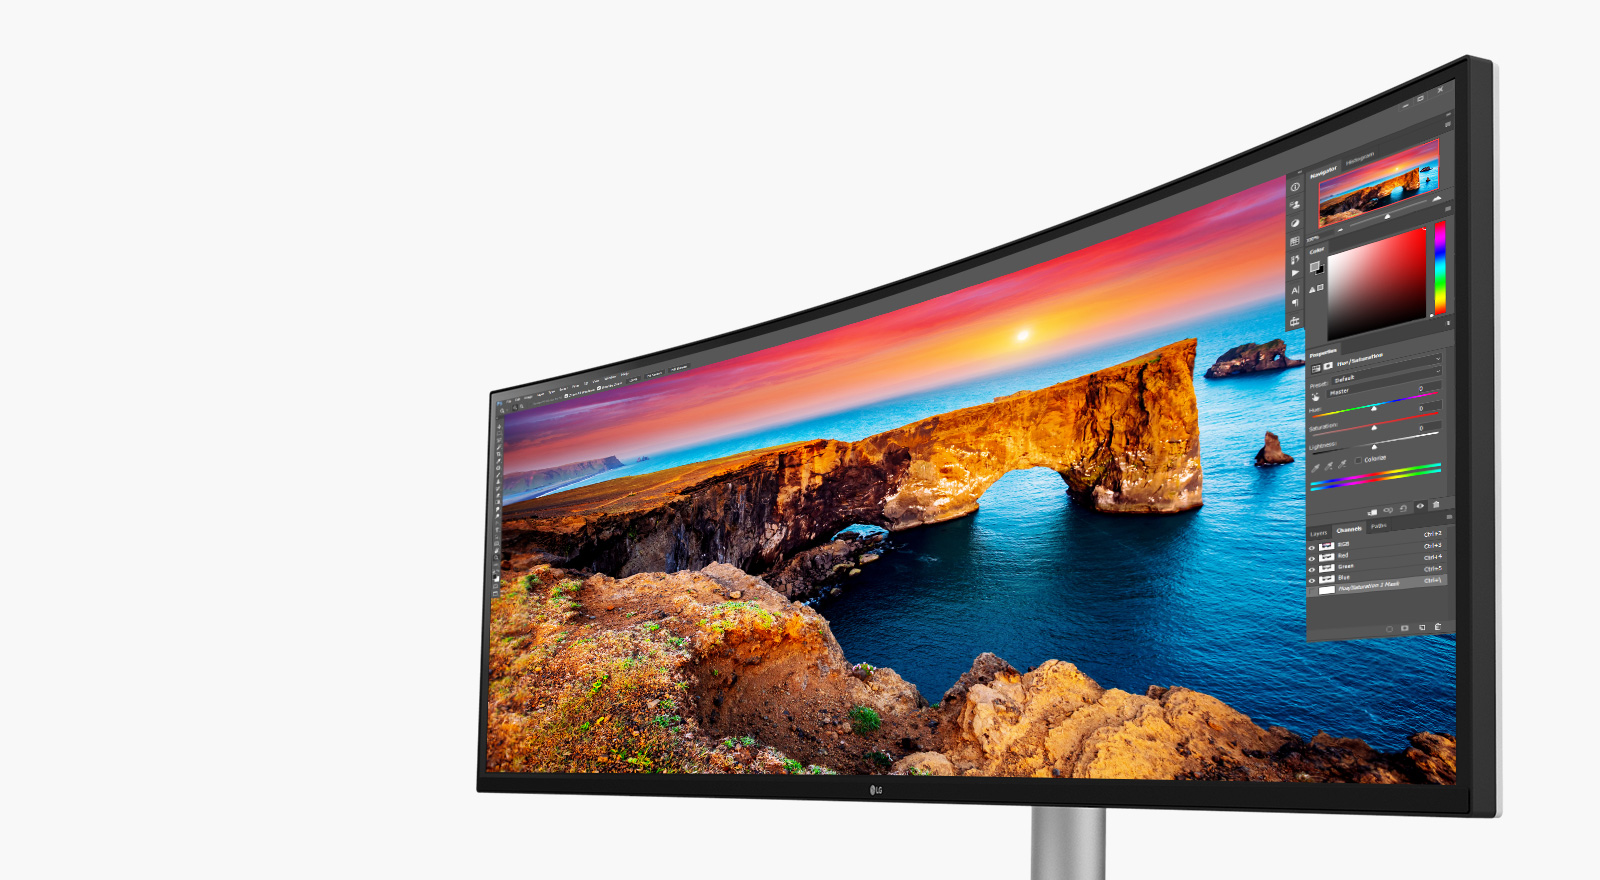 Das Nano IPS™-Display von LG unterstützt ein breites Farbspektrum, und zwar 98 % des DCI-P3-Farbraums. VESA Display HDR ™400 sorgt für Helligkeit und lebendige Farben.